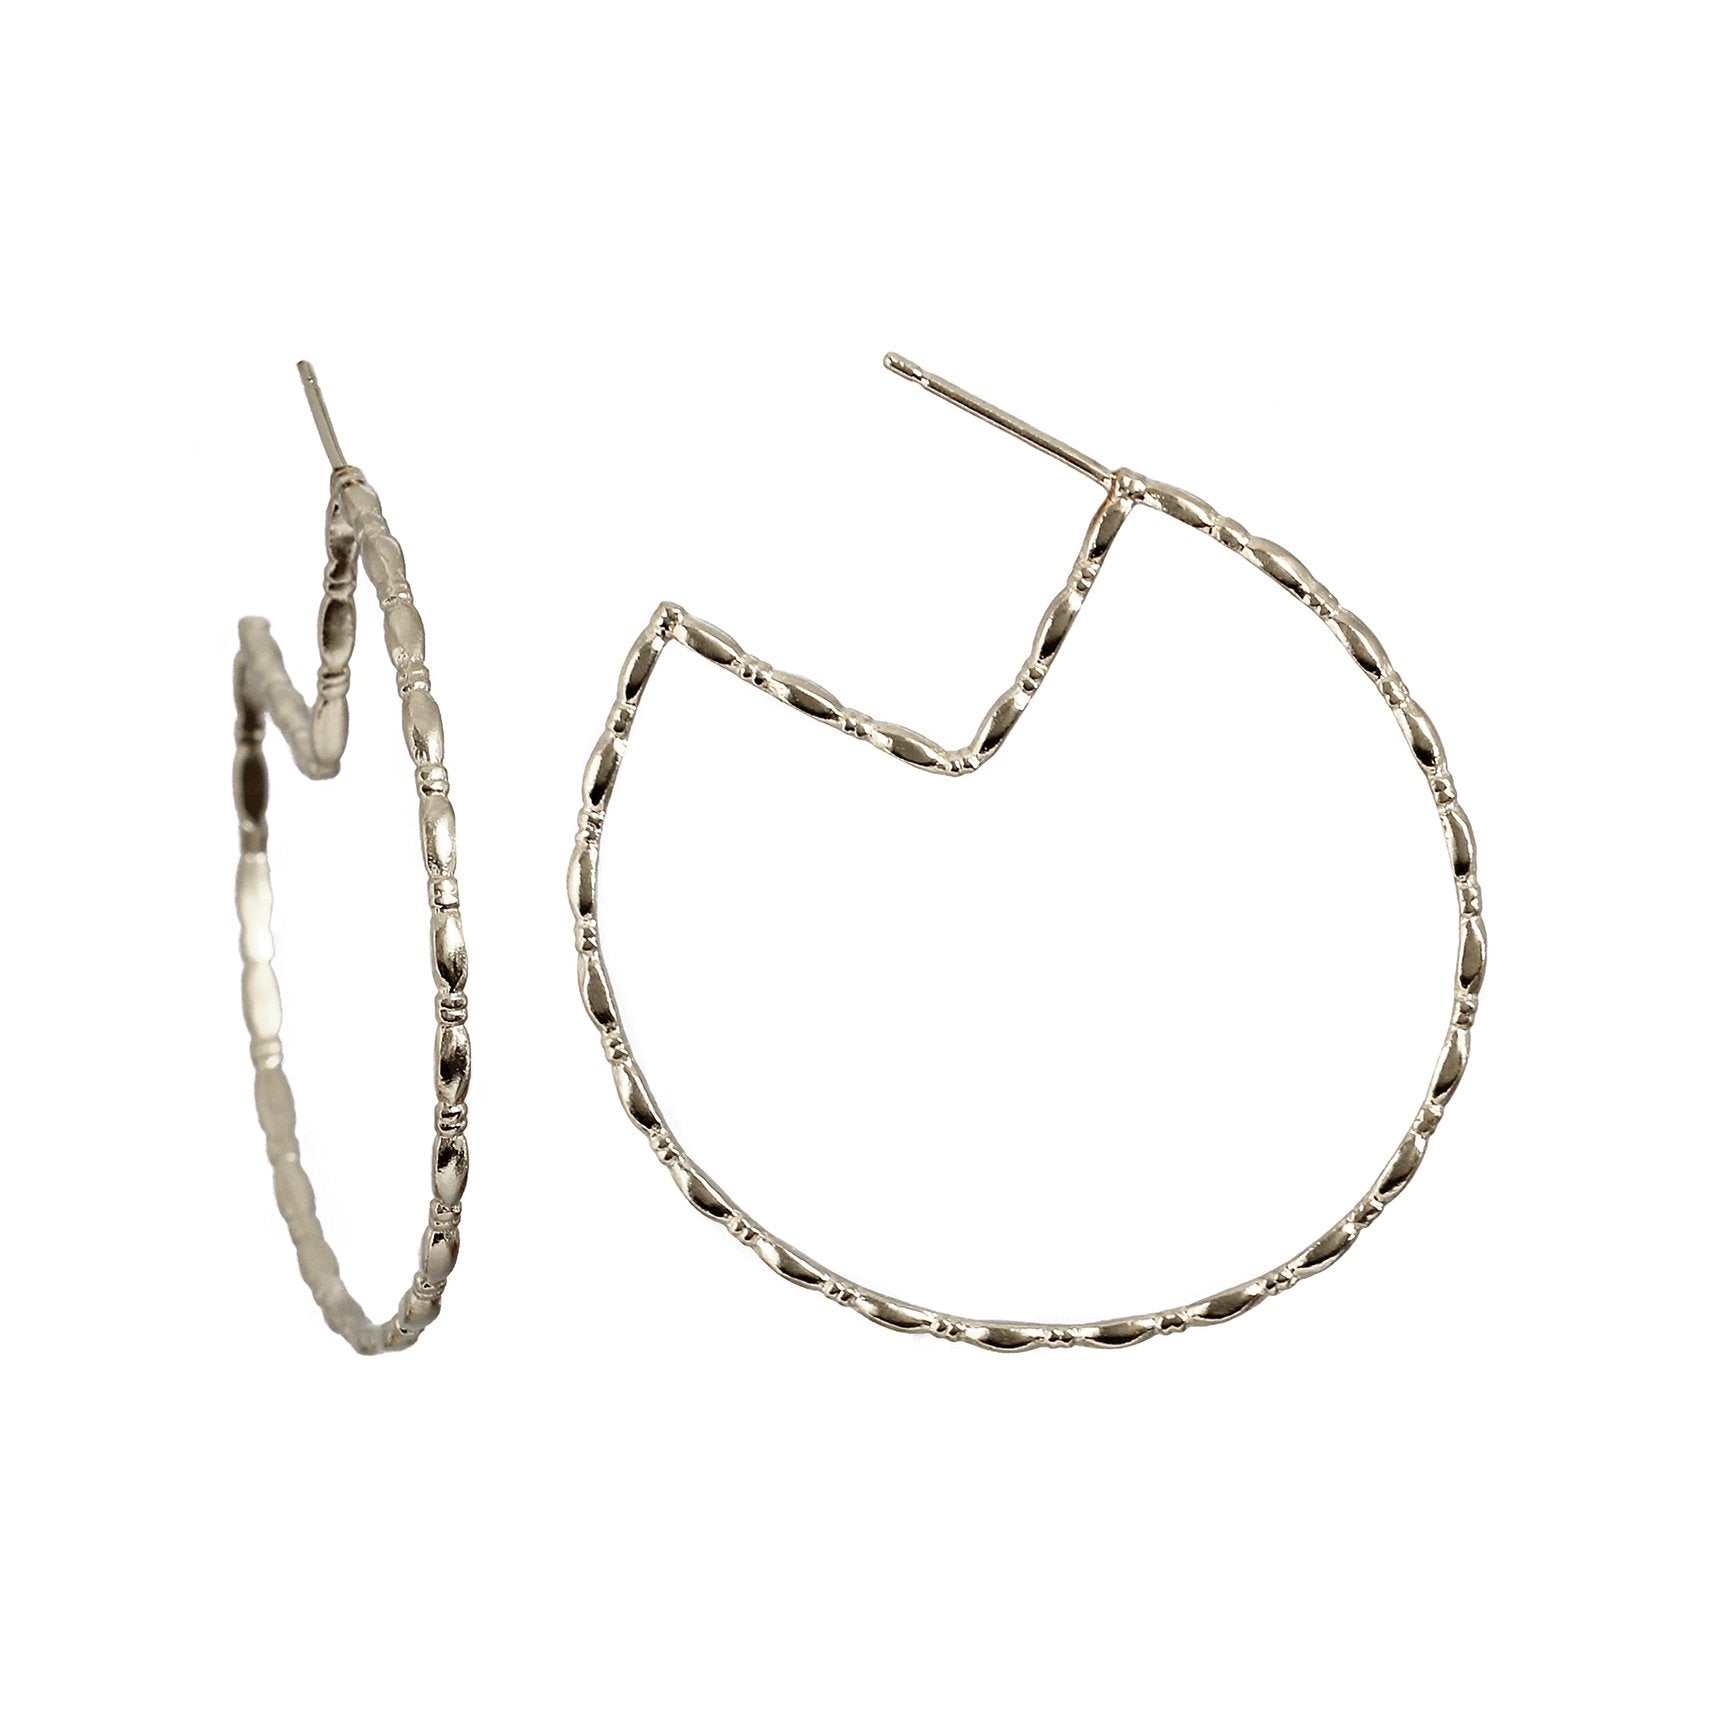 Silver large hoop earrings